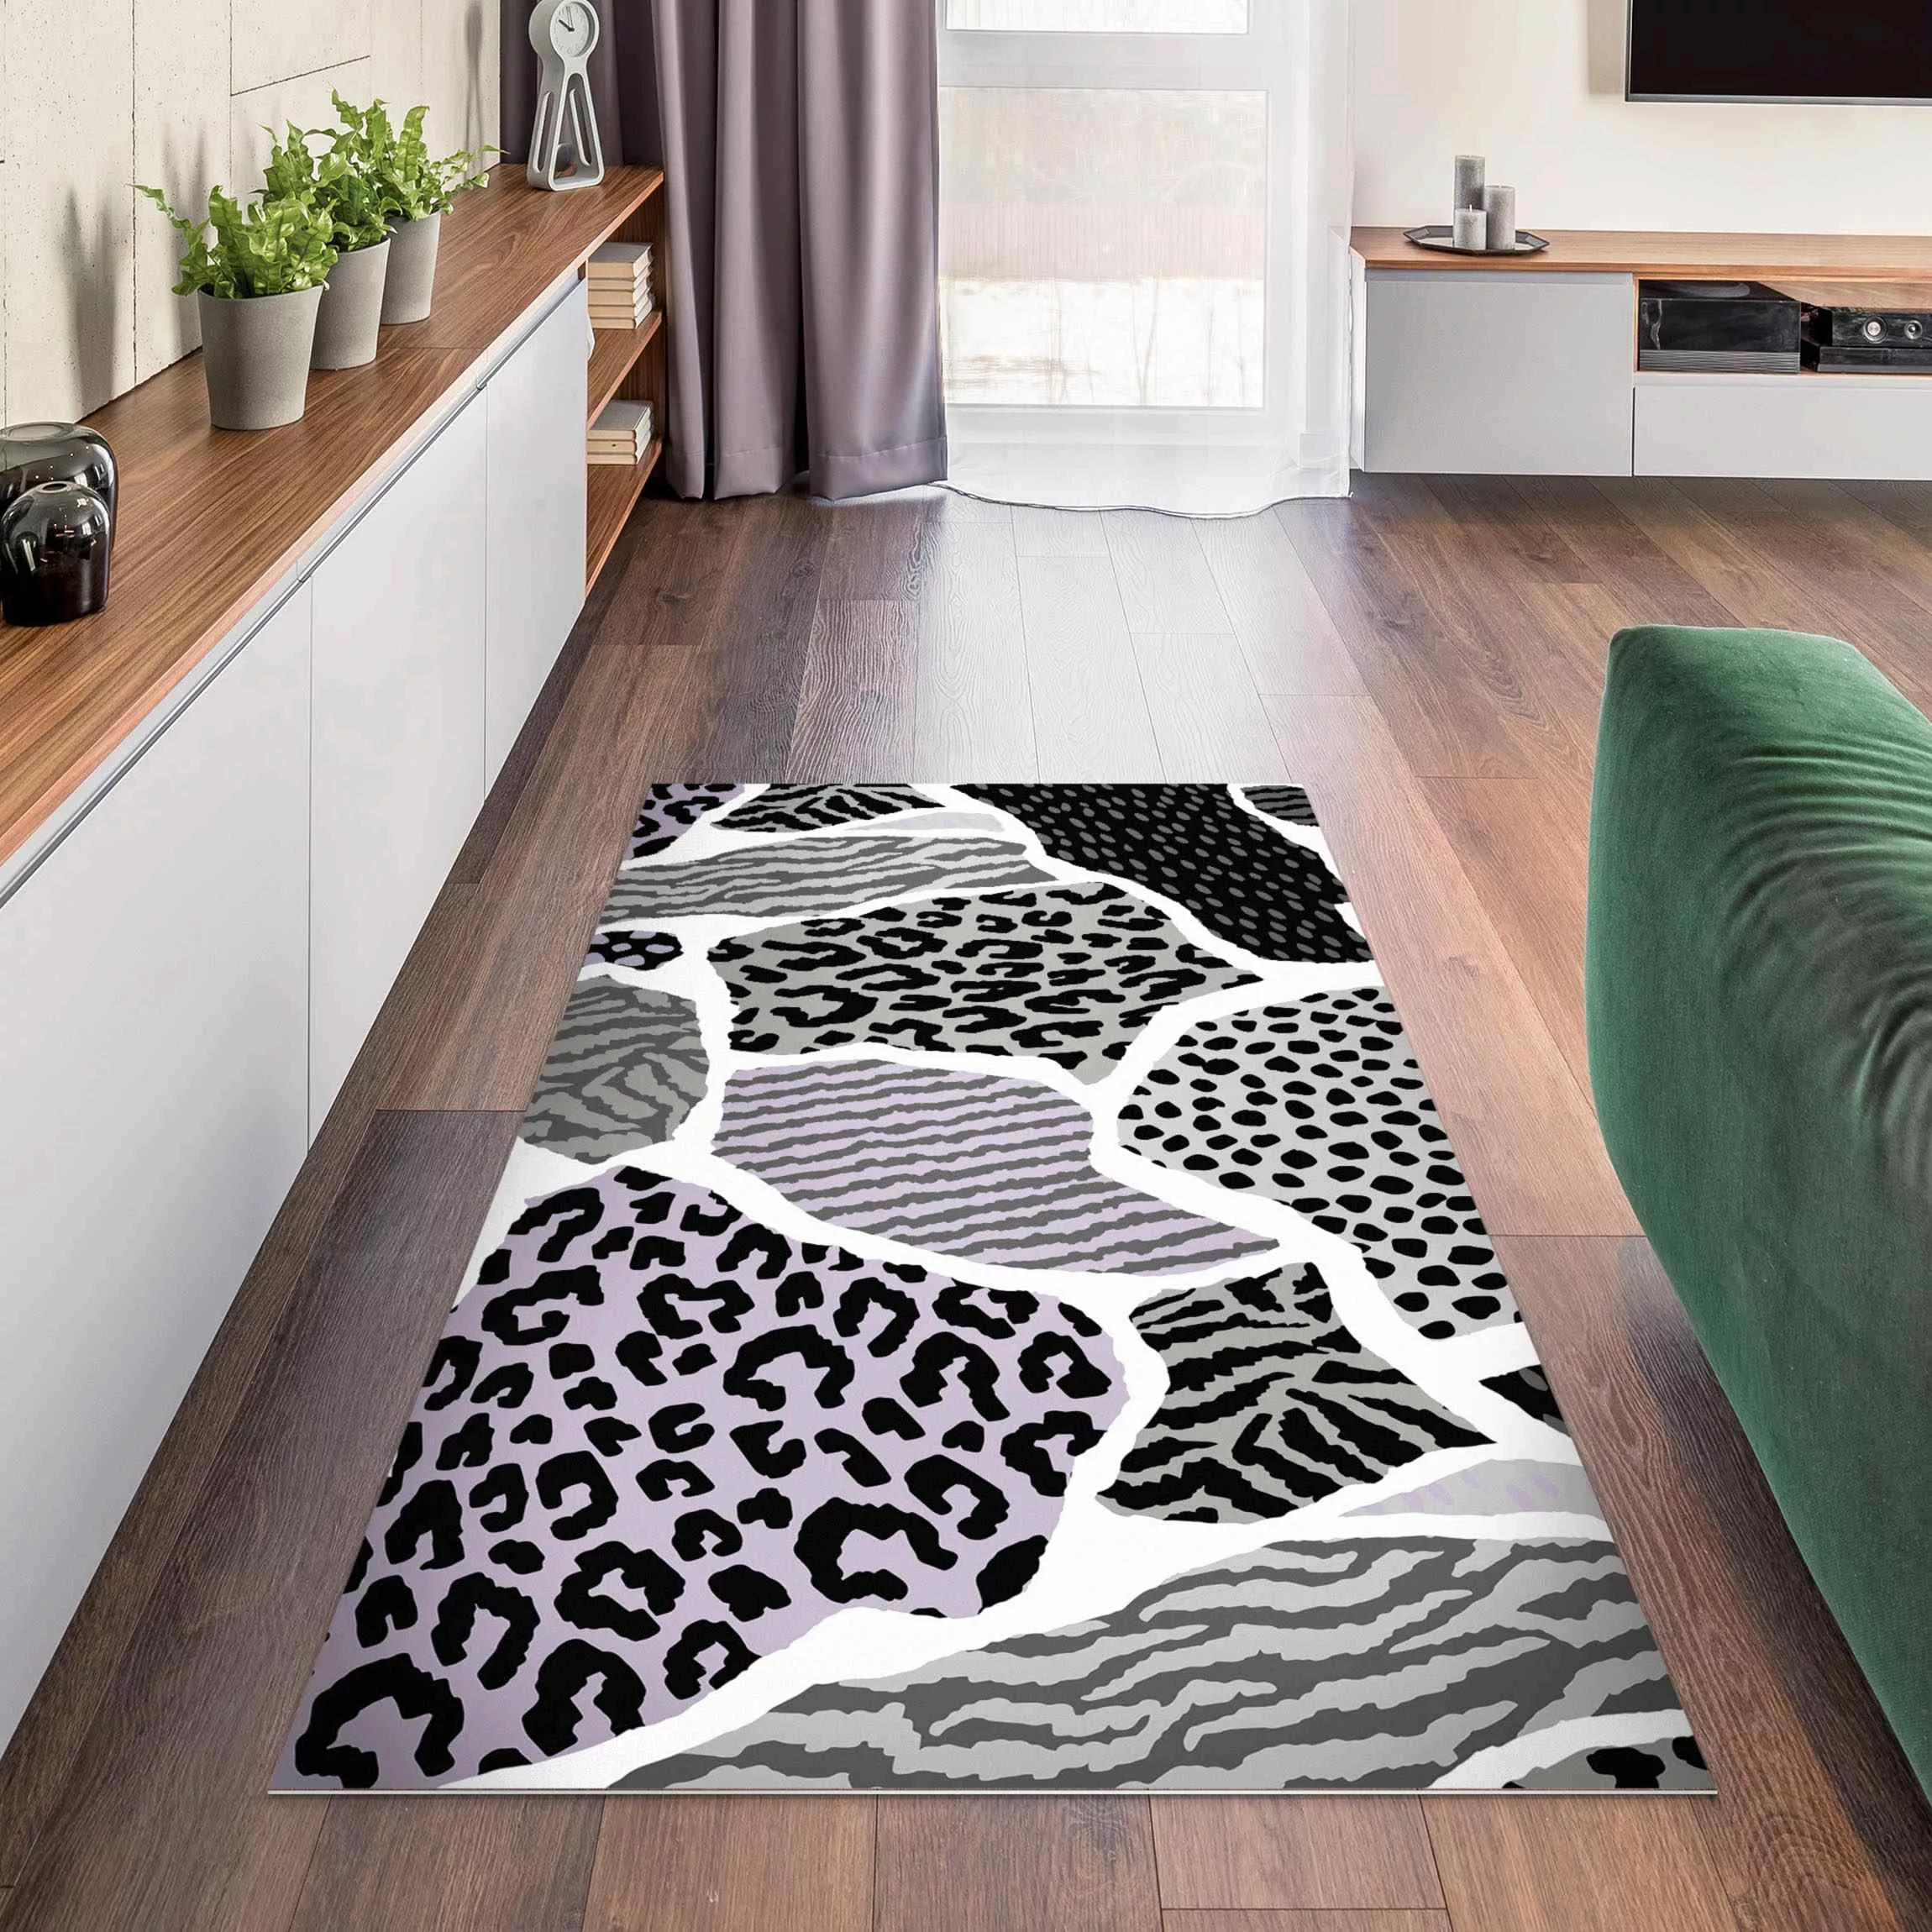 Vinyl-Teppich Animalprint Zebra Tiger Leopard Europa günstig online kaufen